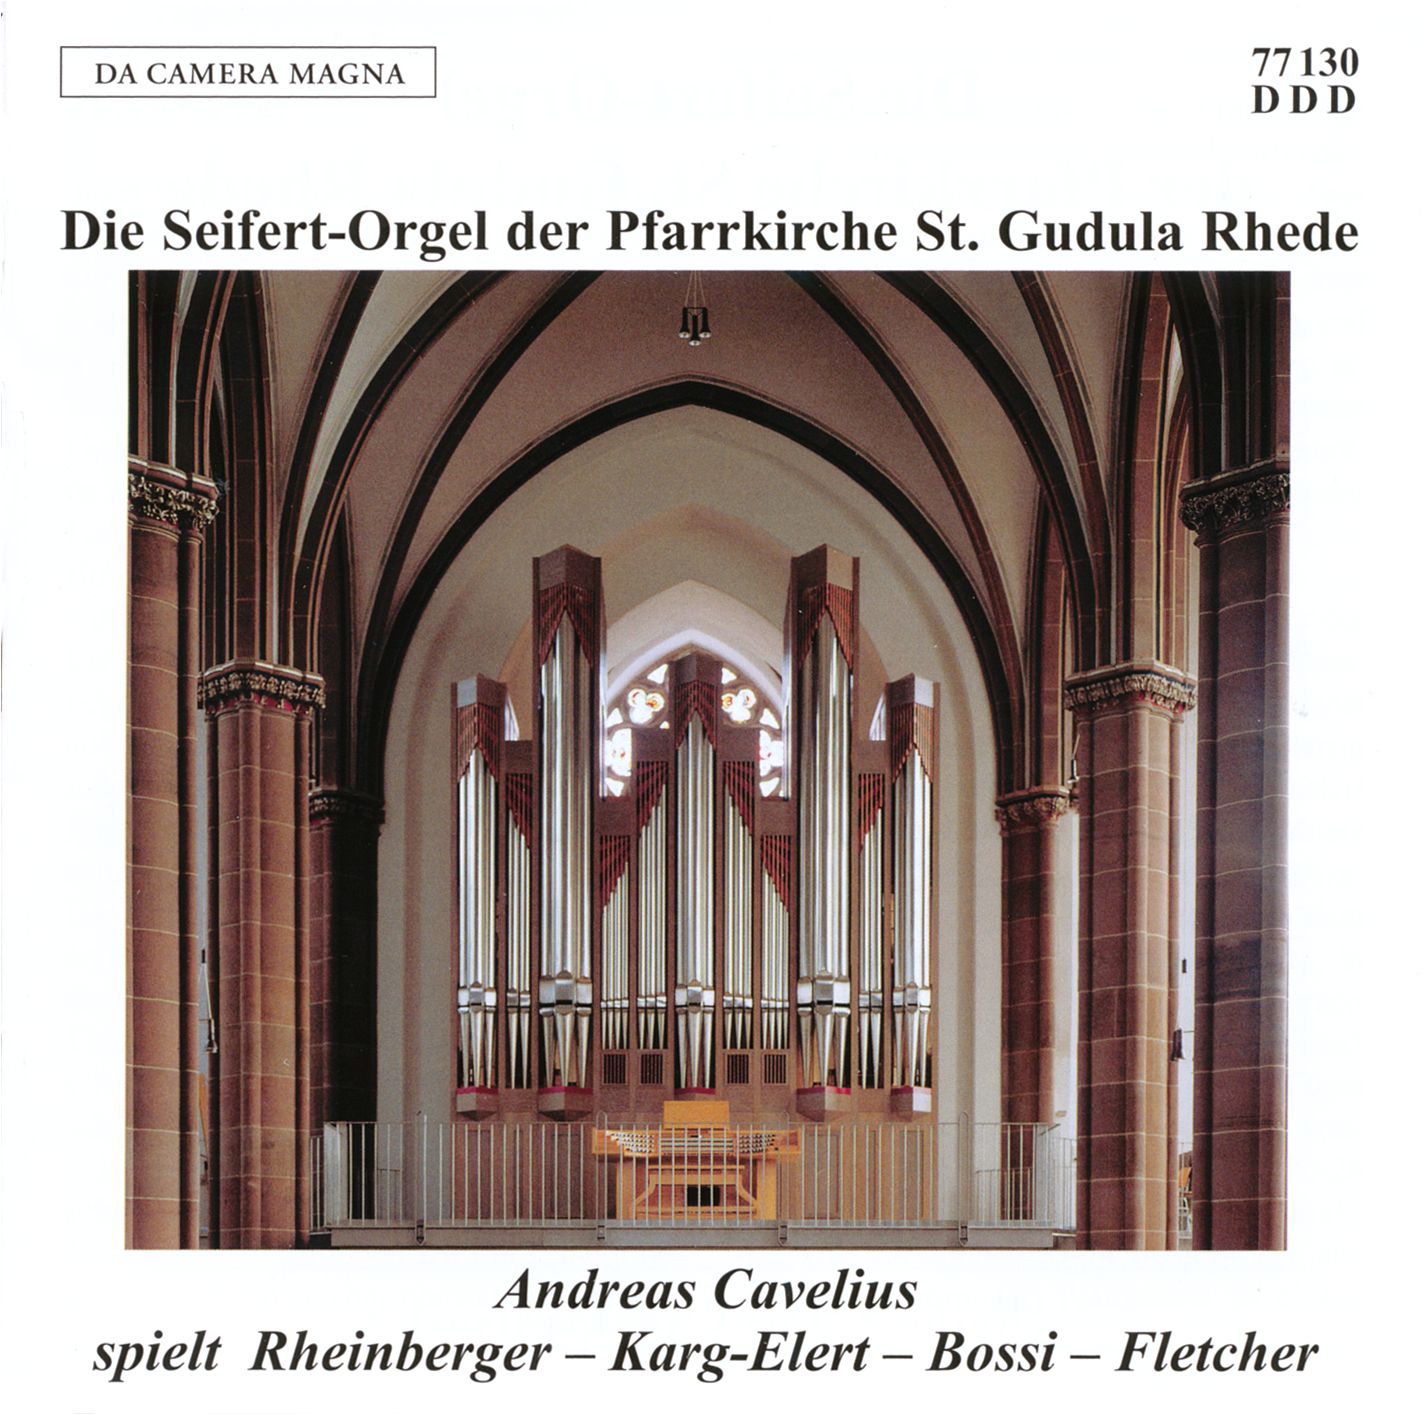 Die Seifert-Orgel der Pfarrkirche St. Gudula in Rhede